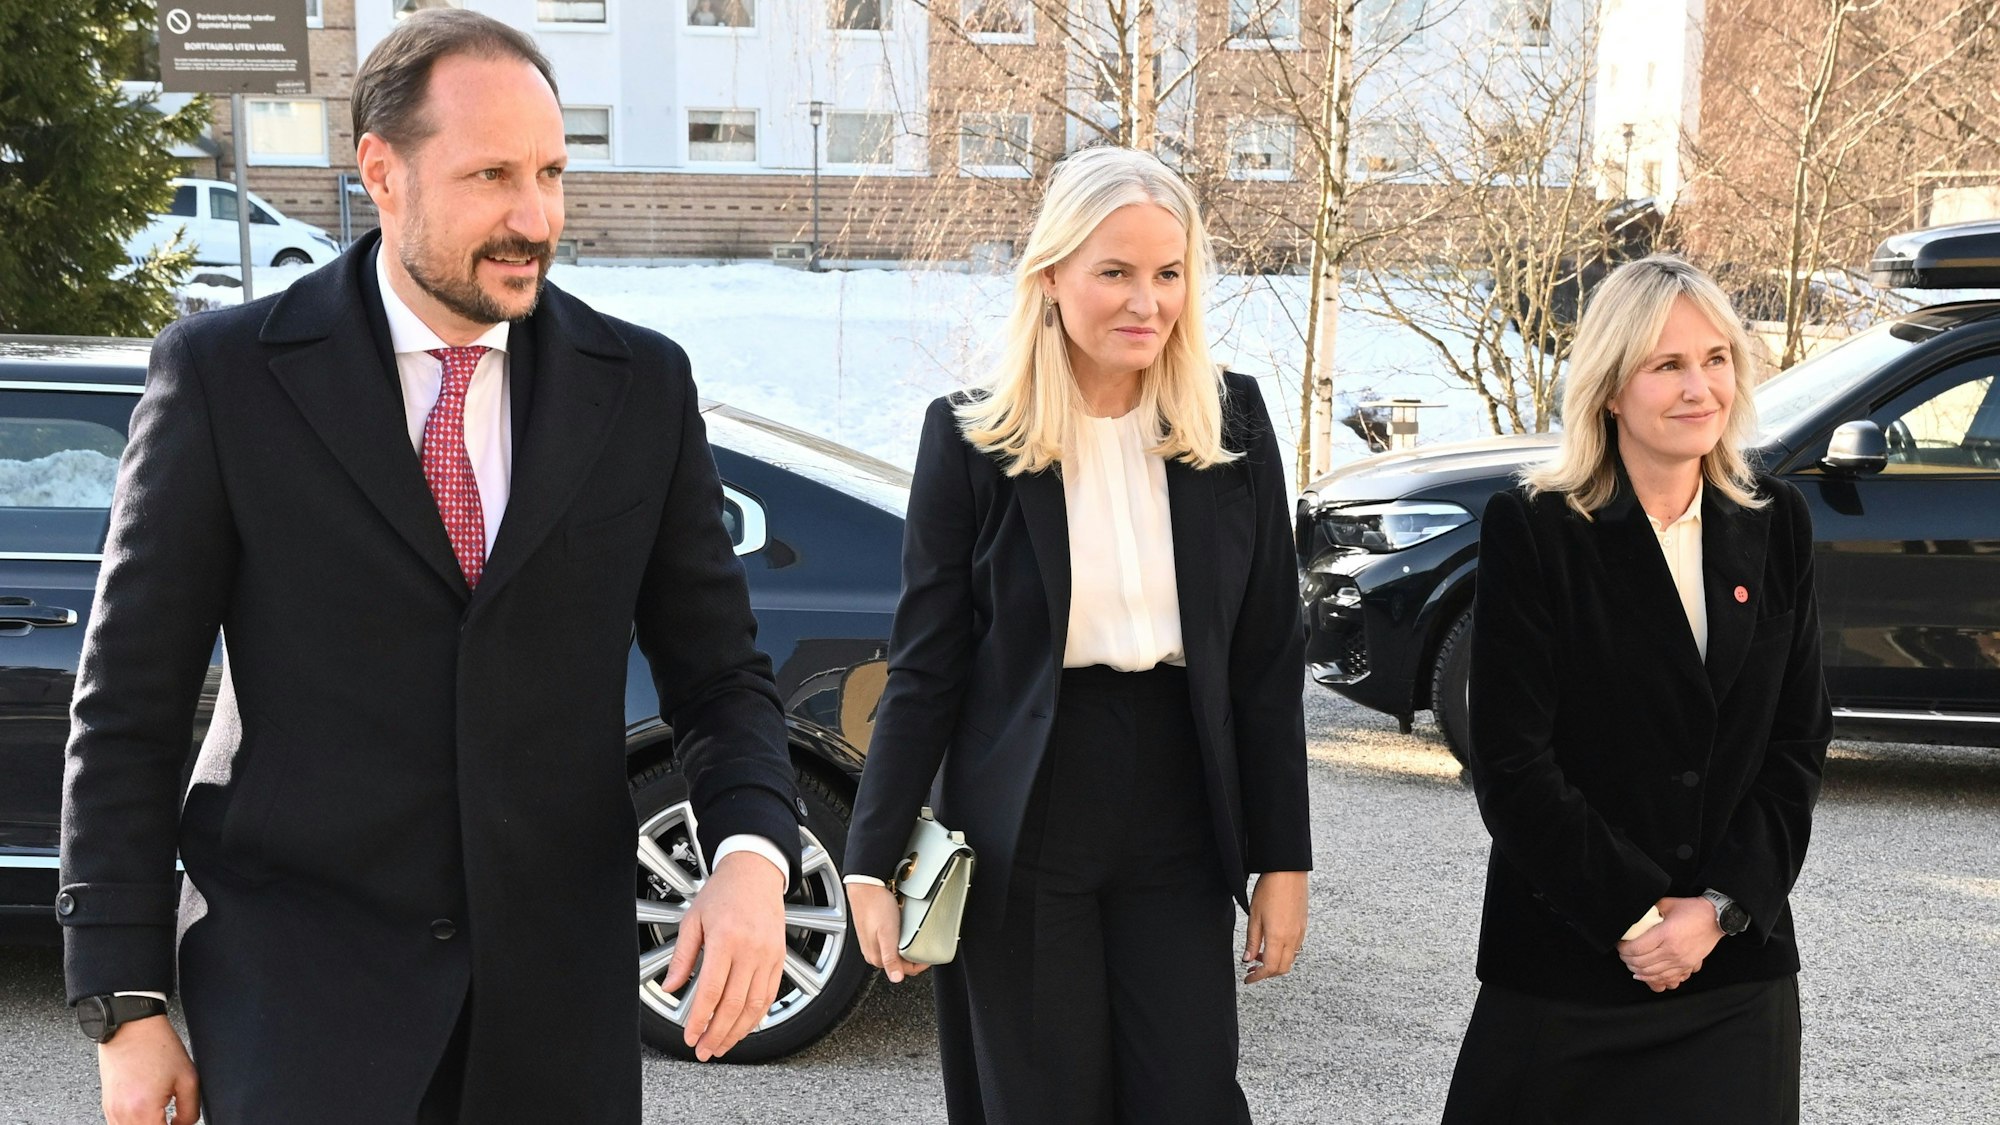 Kronprinz Haakon, Kronprinzessin Mette-Marit und Oslos Bürgermeisterin Anne Lindboe